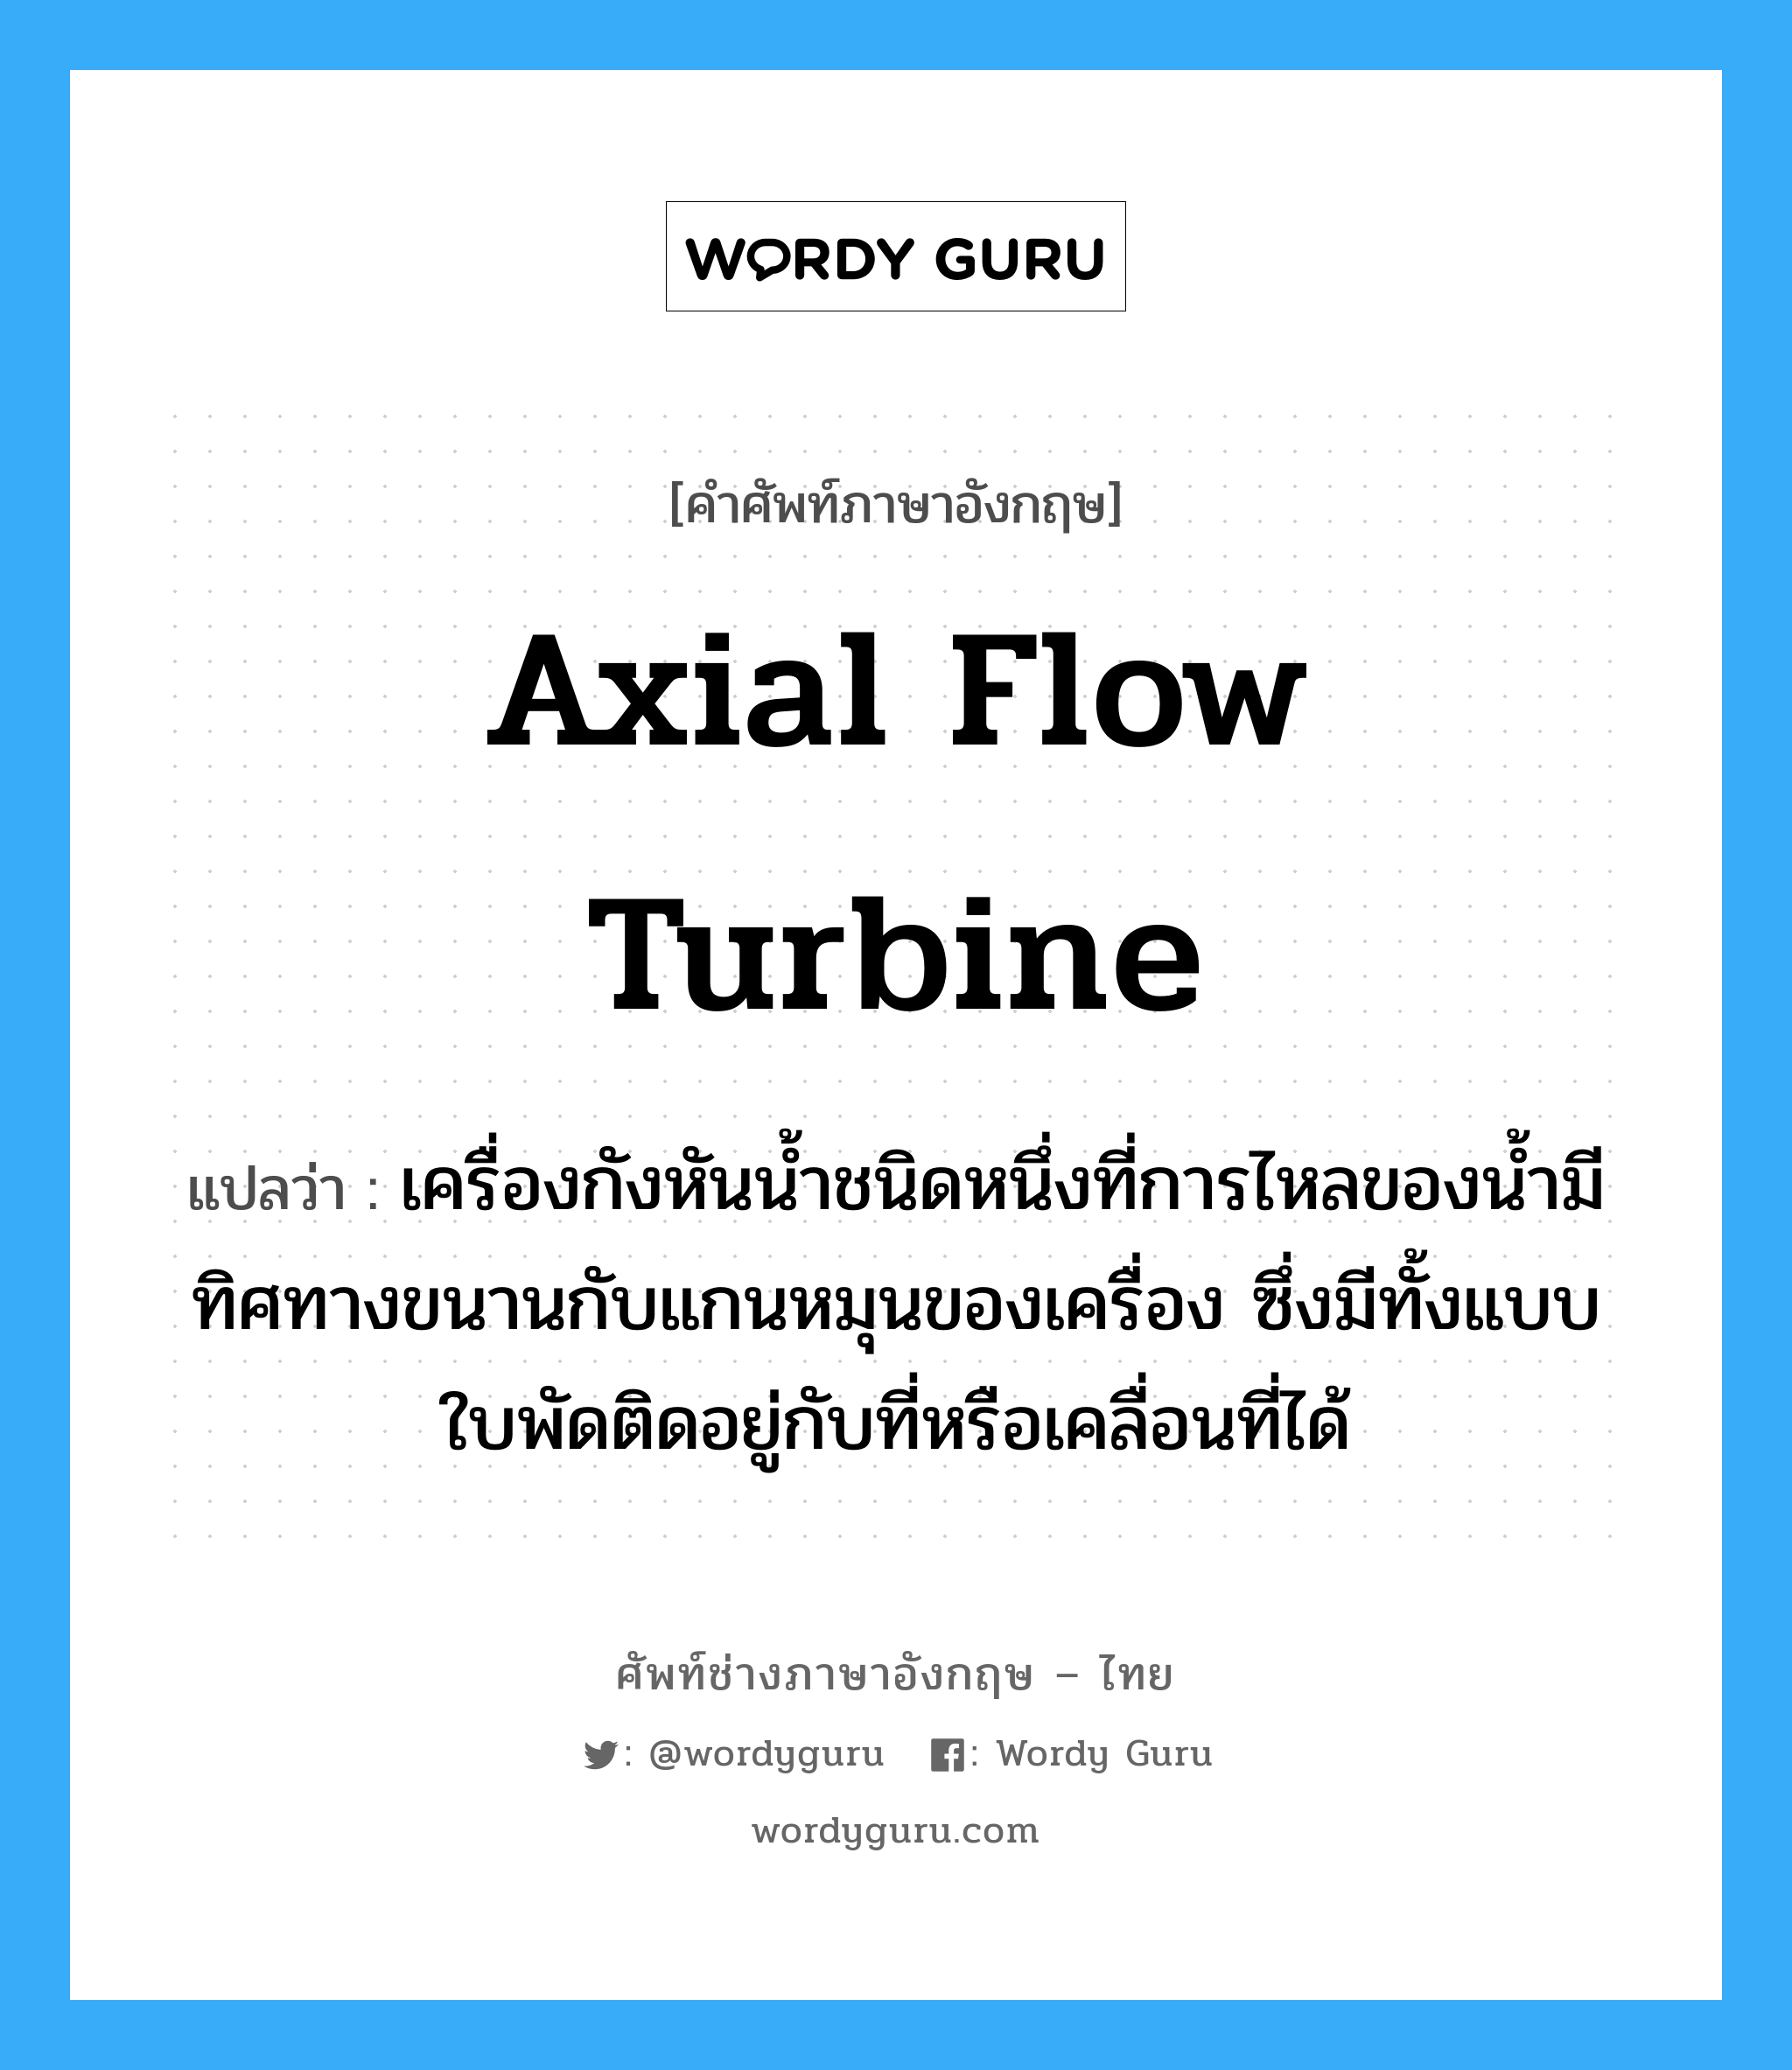 axial flow turbine แปลว่า?, คำศัพท์ช่างภาษาอังกฤษ - ไทย axial flow turbine คำศัพท์ภาษาอังกฤษ axial flow turbine แปลว่า เครื่องกังหันน้ำชนิดหนึ่งที่การไหลของน้ำมีทิศทางขนานกับแกนหมุนของเครื่อง ซึ่งมีทั้งแบบใบพัดติดอยู่กับที่หรือเคลื่อนที่ได้